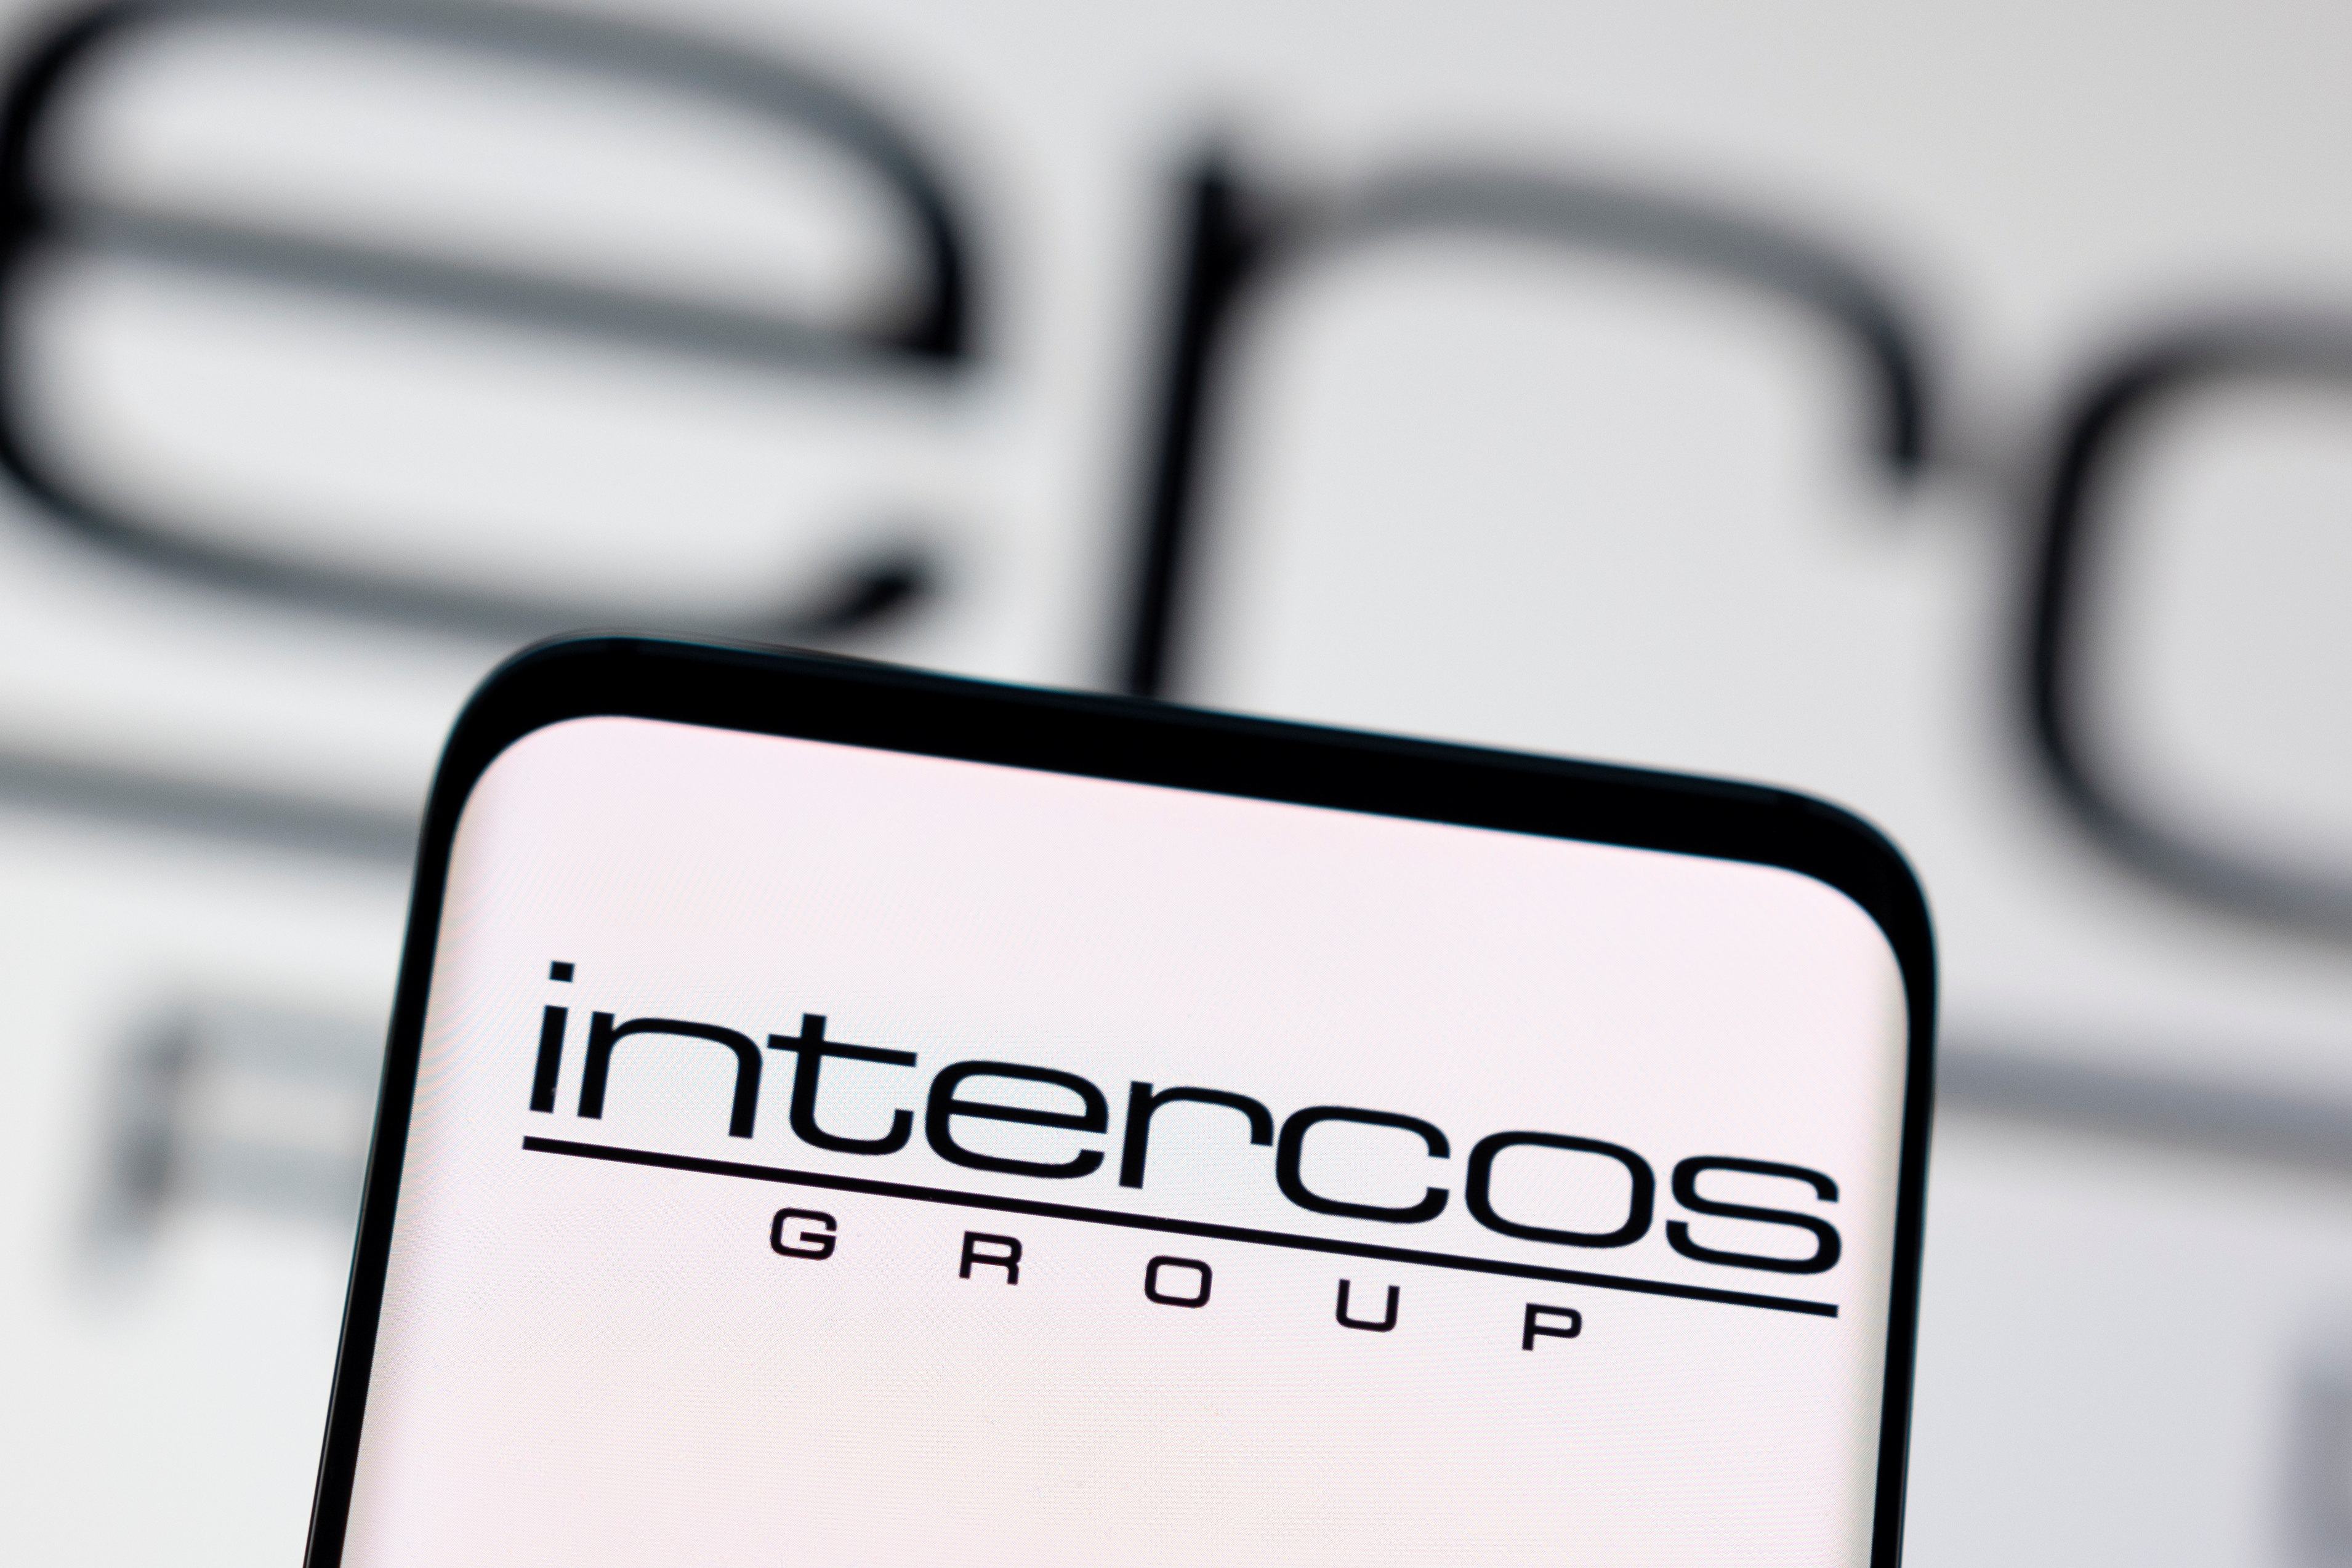 Illustration shows Intercos logo